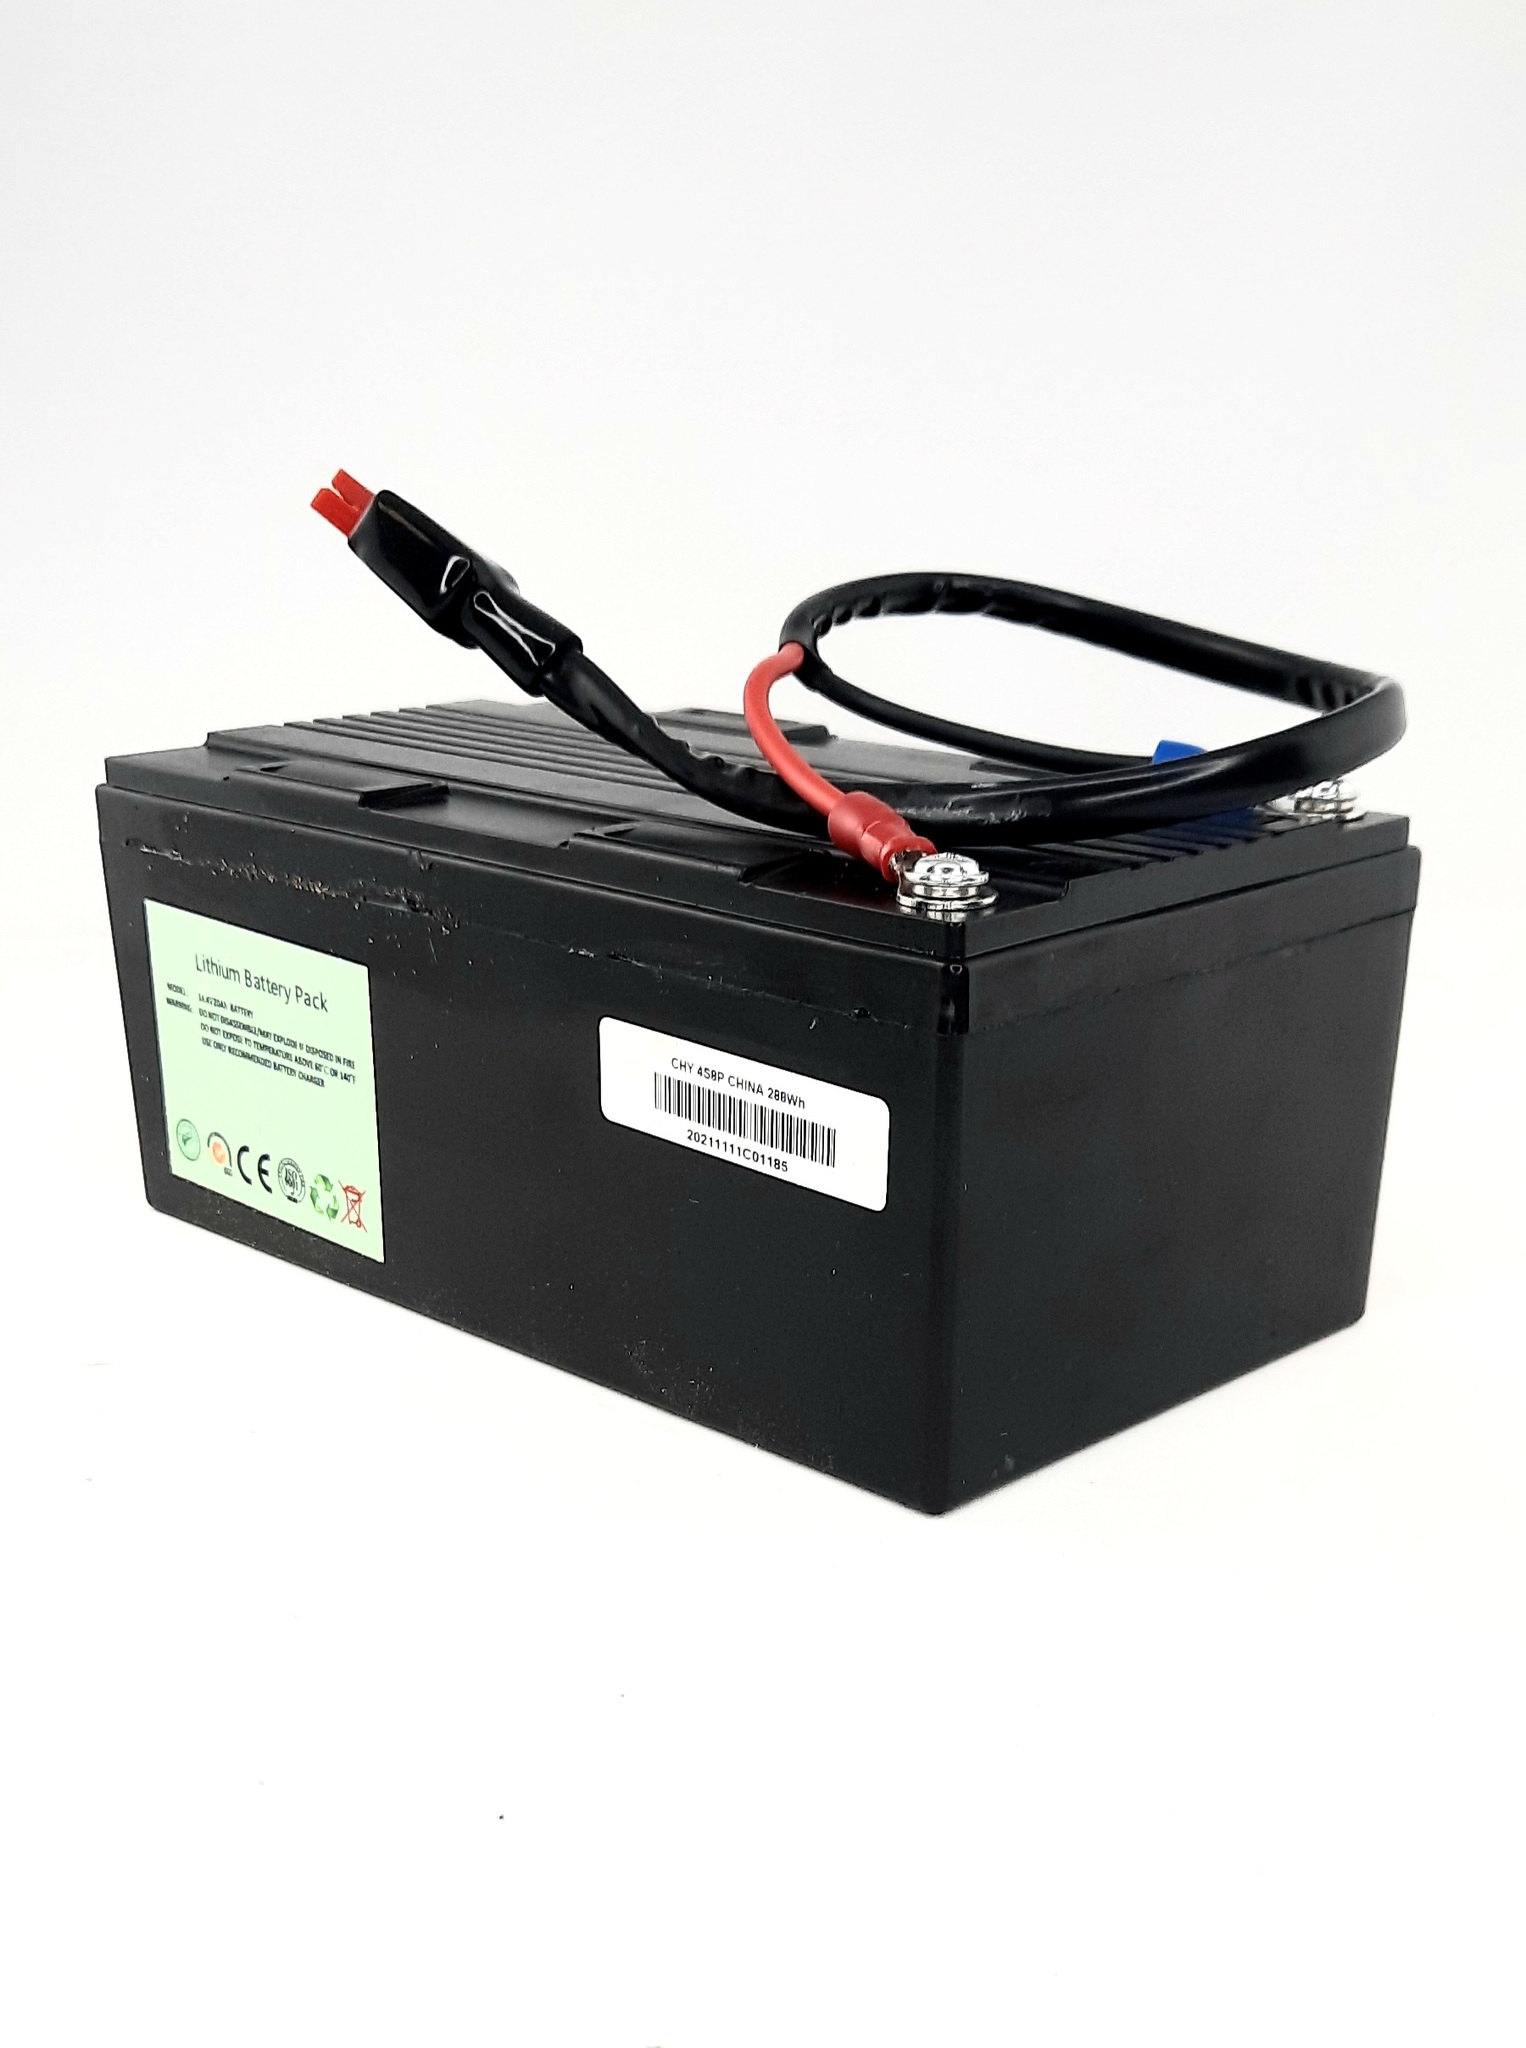 Litiumbatteri 20Ah 14,4v inkl, Kabel, väska och laddare